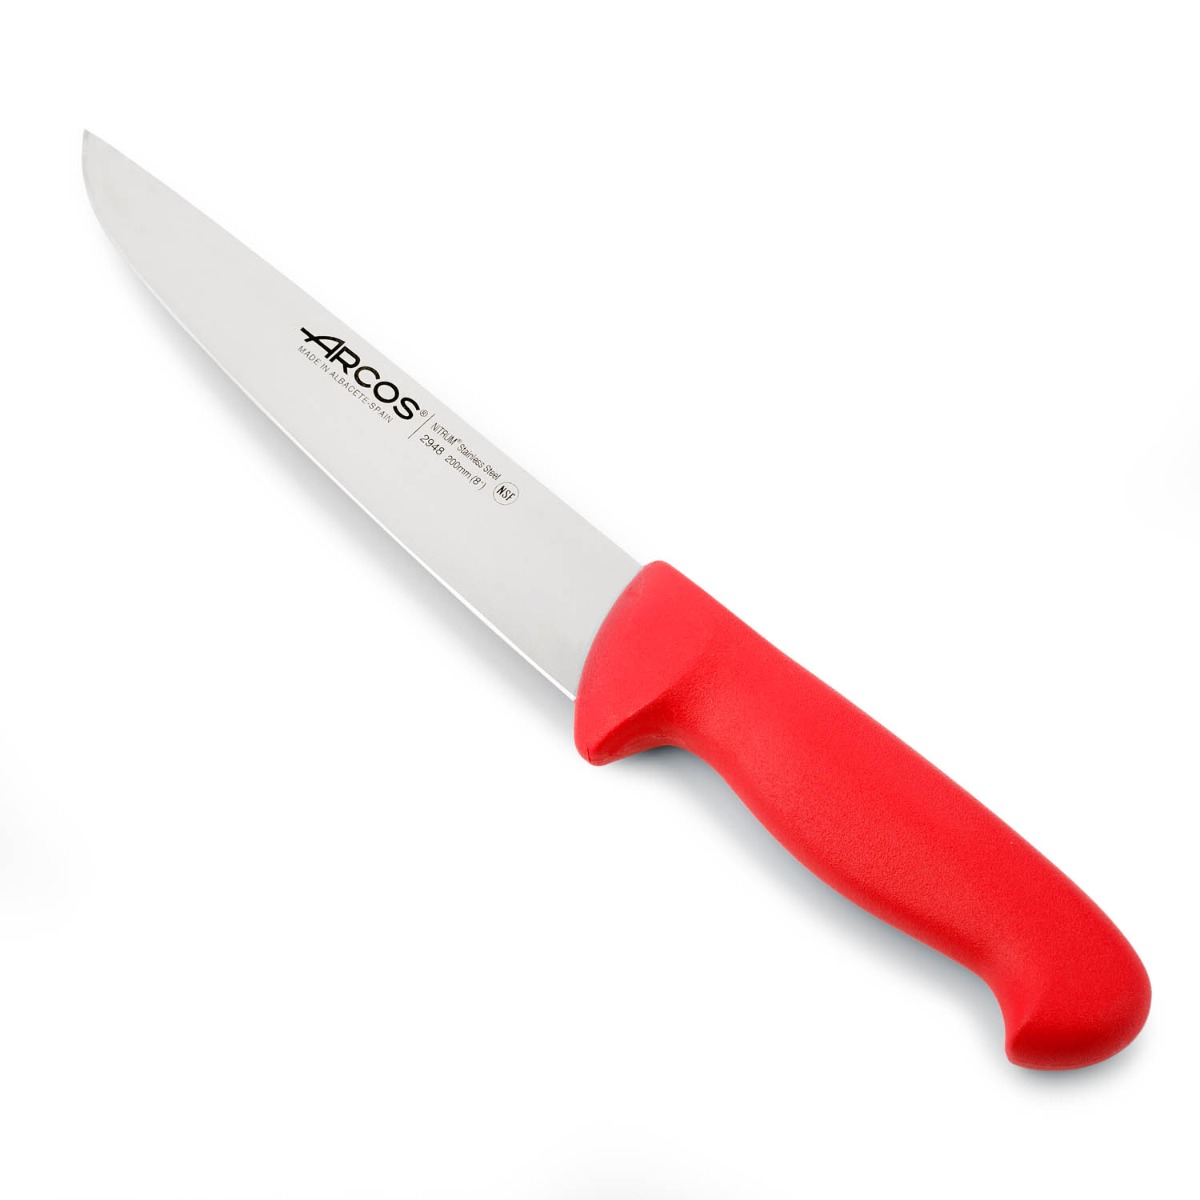 Arcos - Arcos Serie 2900 - Cuchillo Carnicero - Hoja de Acero Inoxidable NITRUM de 200 mm - Mango inyectado en Polipropileno Color rojo